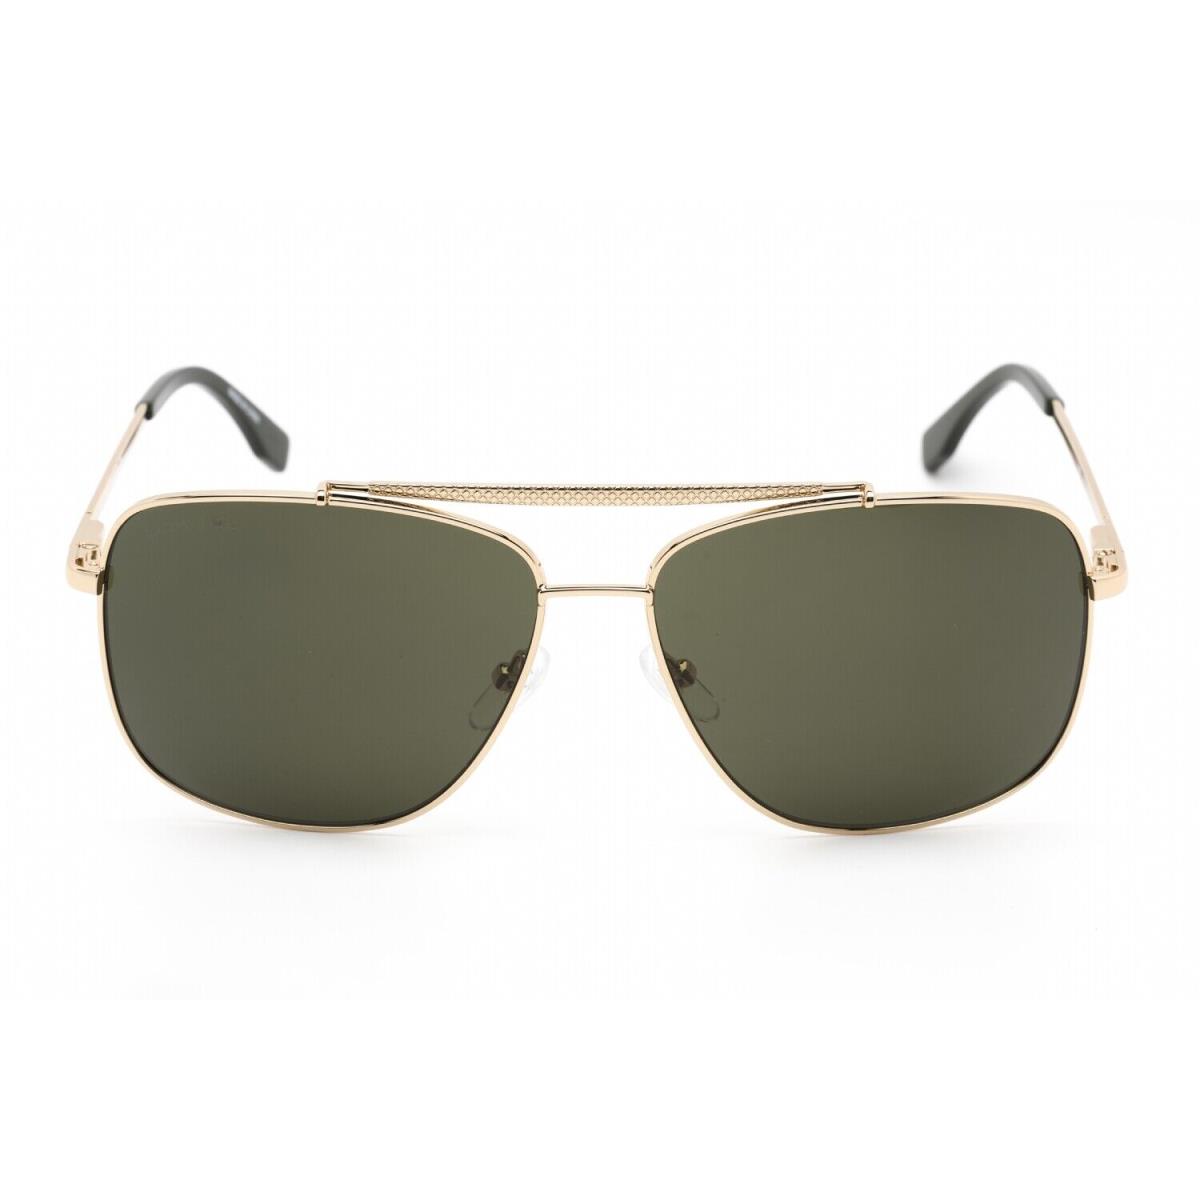 Lacoste L188S 714 Sunglasses Gold Frame Green Lenses 59mm - Frame: Gold, Lens: Gray